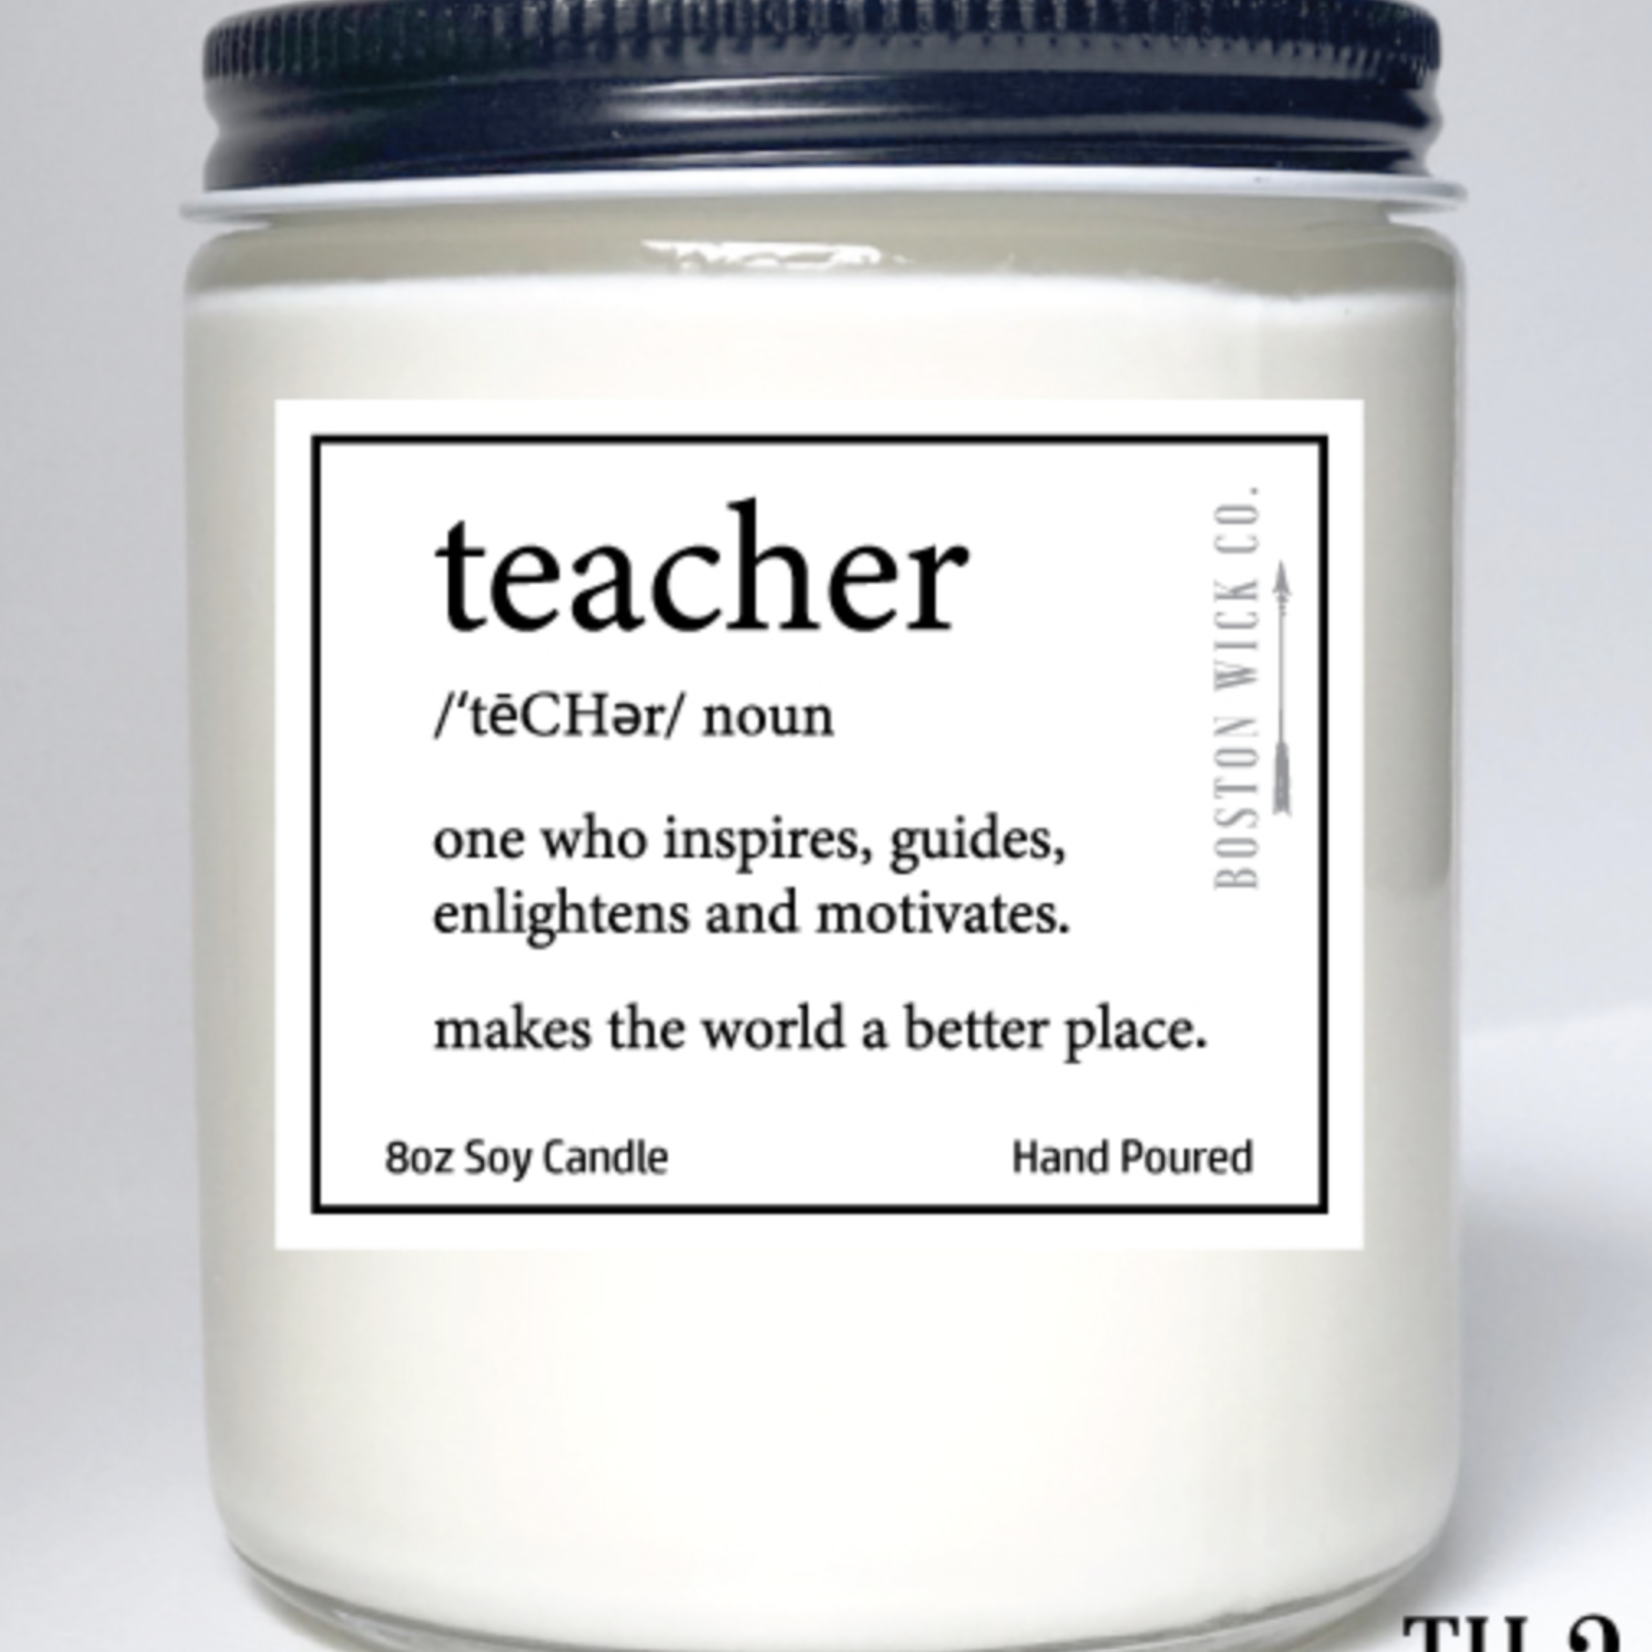 Boston Wick Boston Wick Company - Teacher Definition Candle